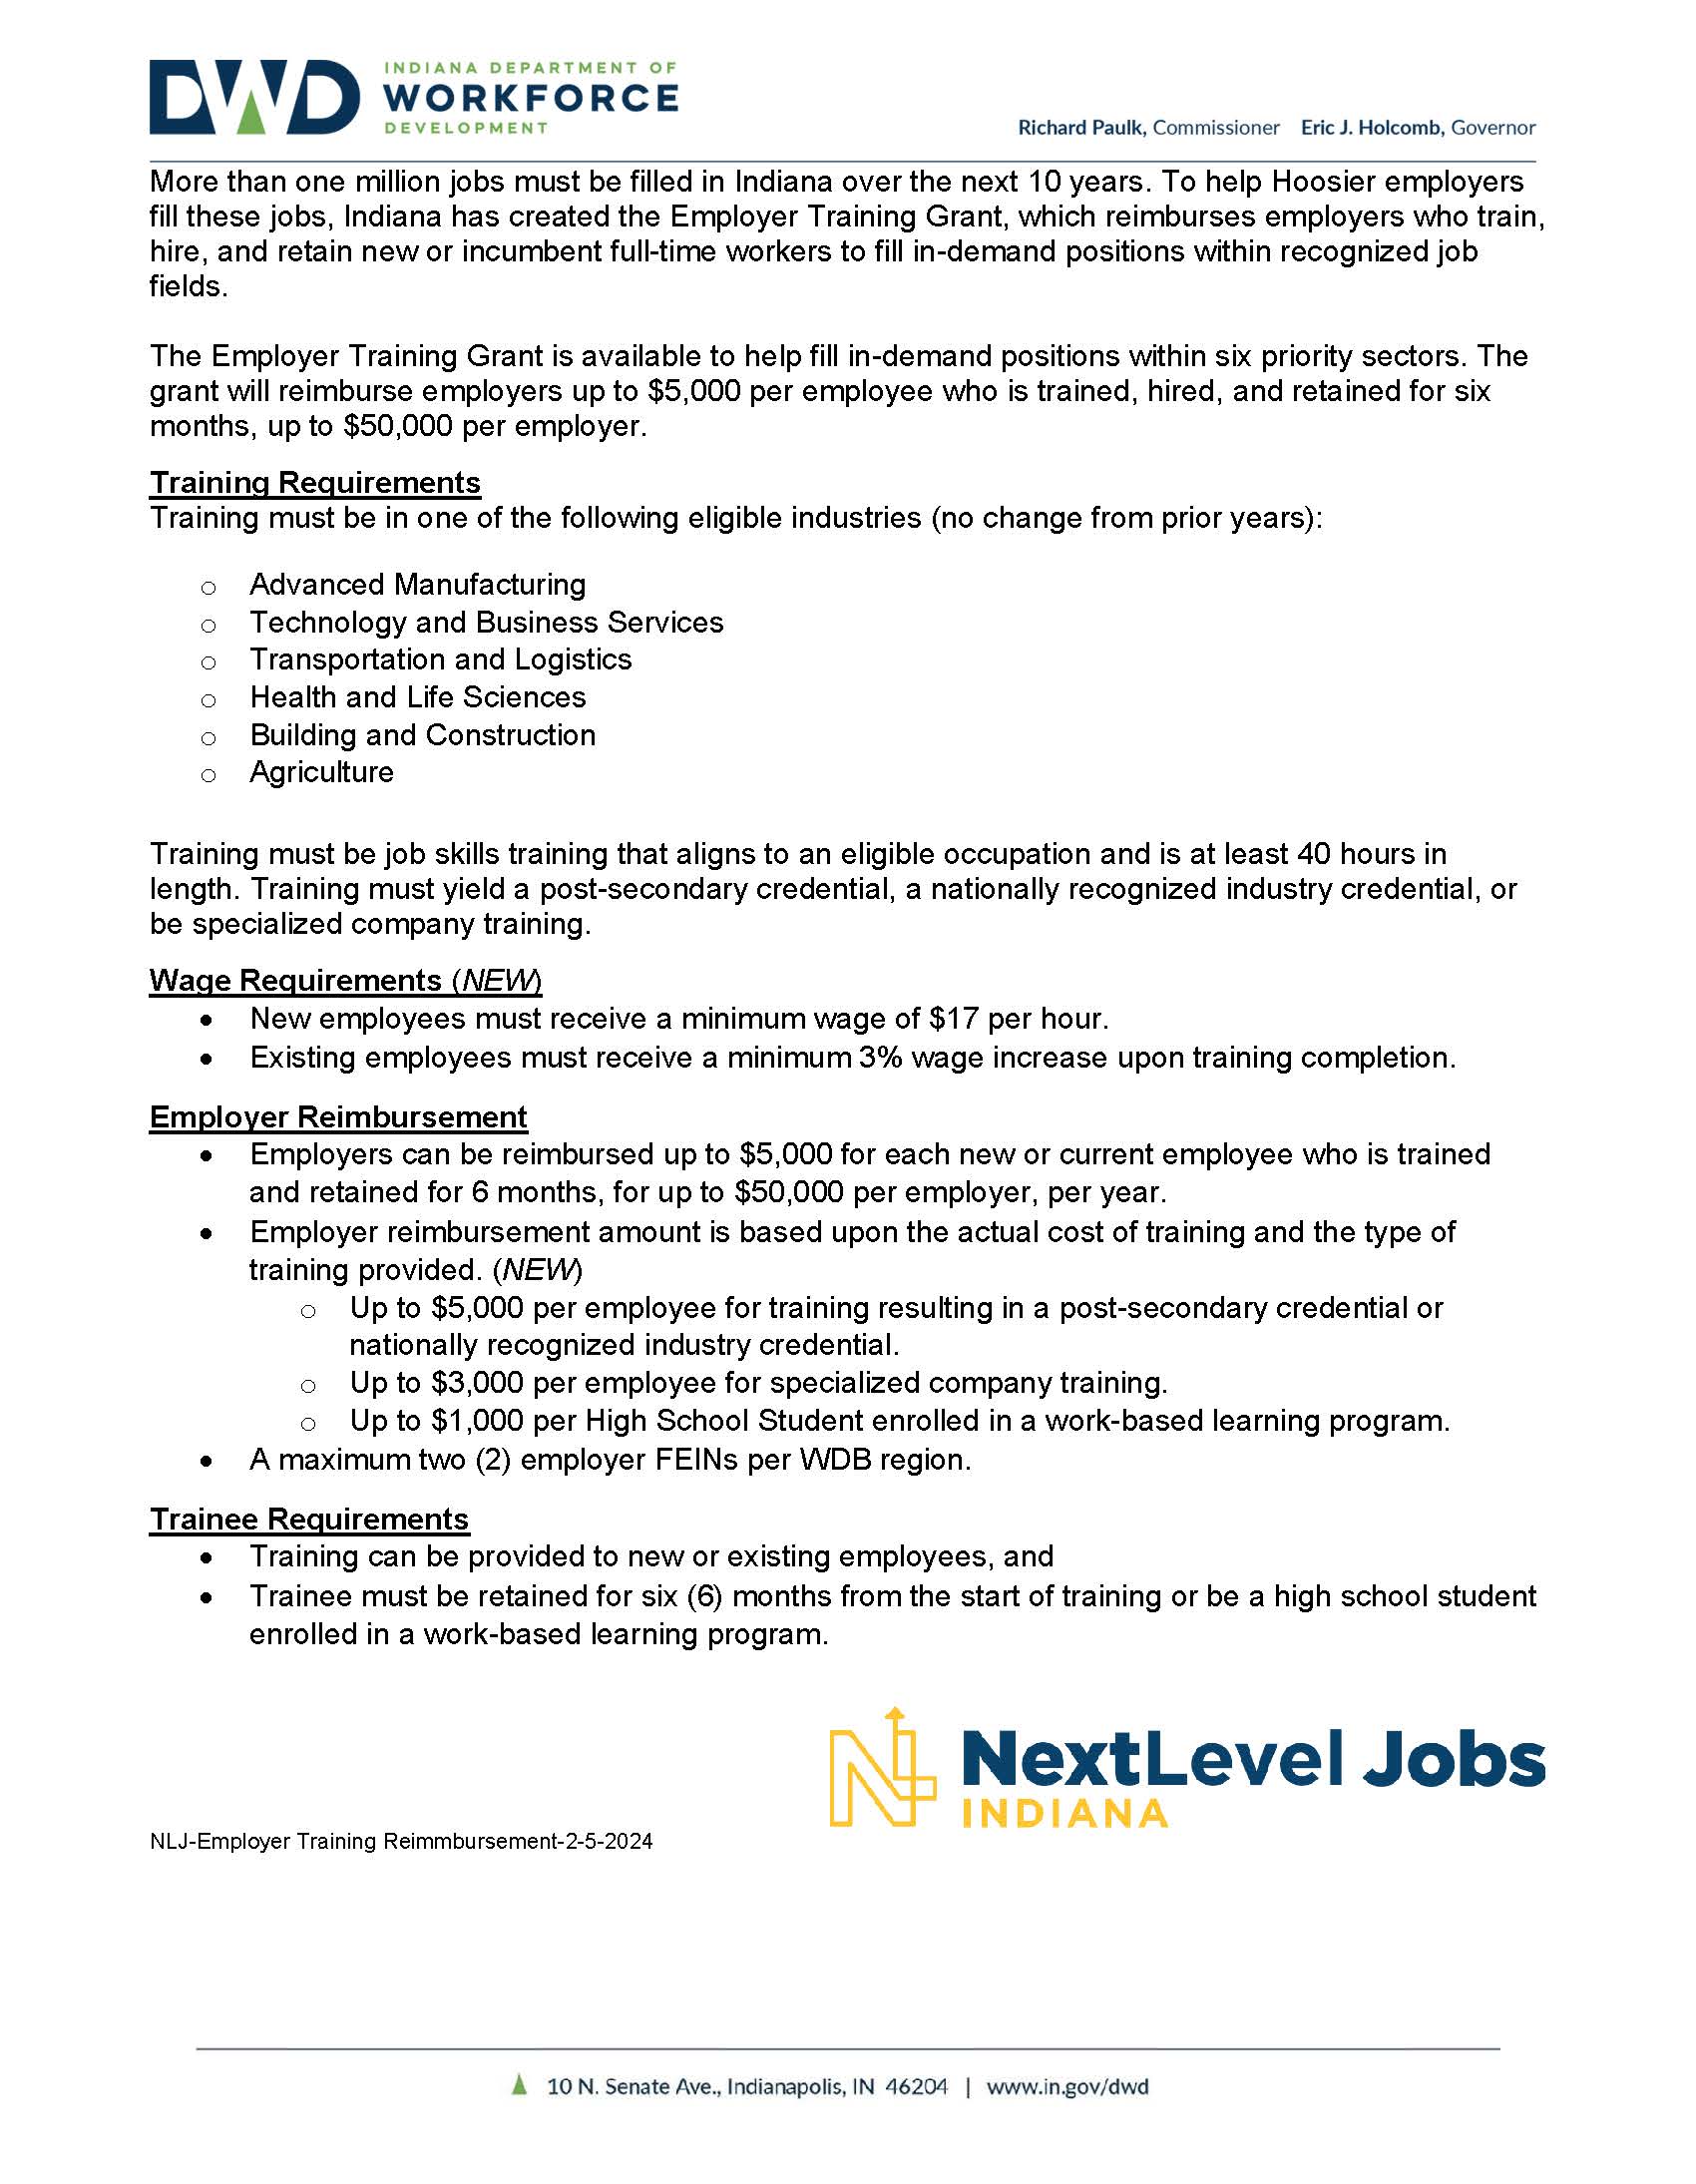 Next Level Jobs ETG Fact Sheet 2 5 24